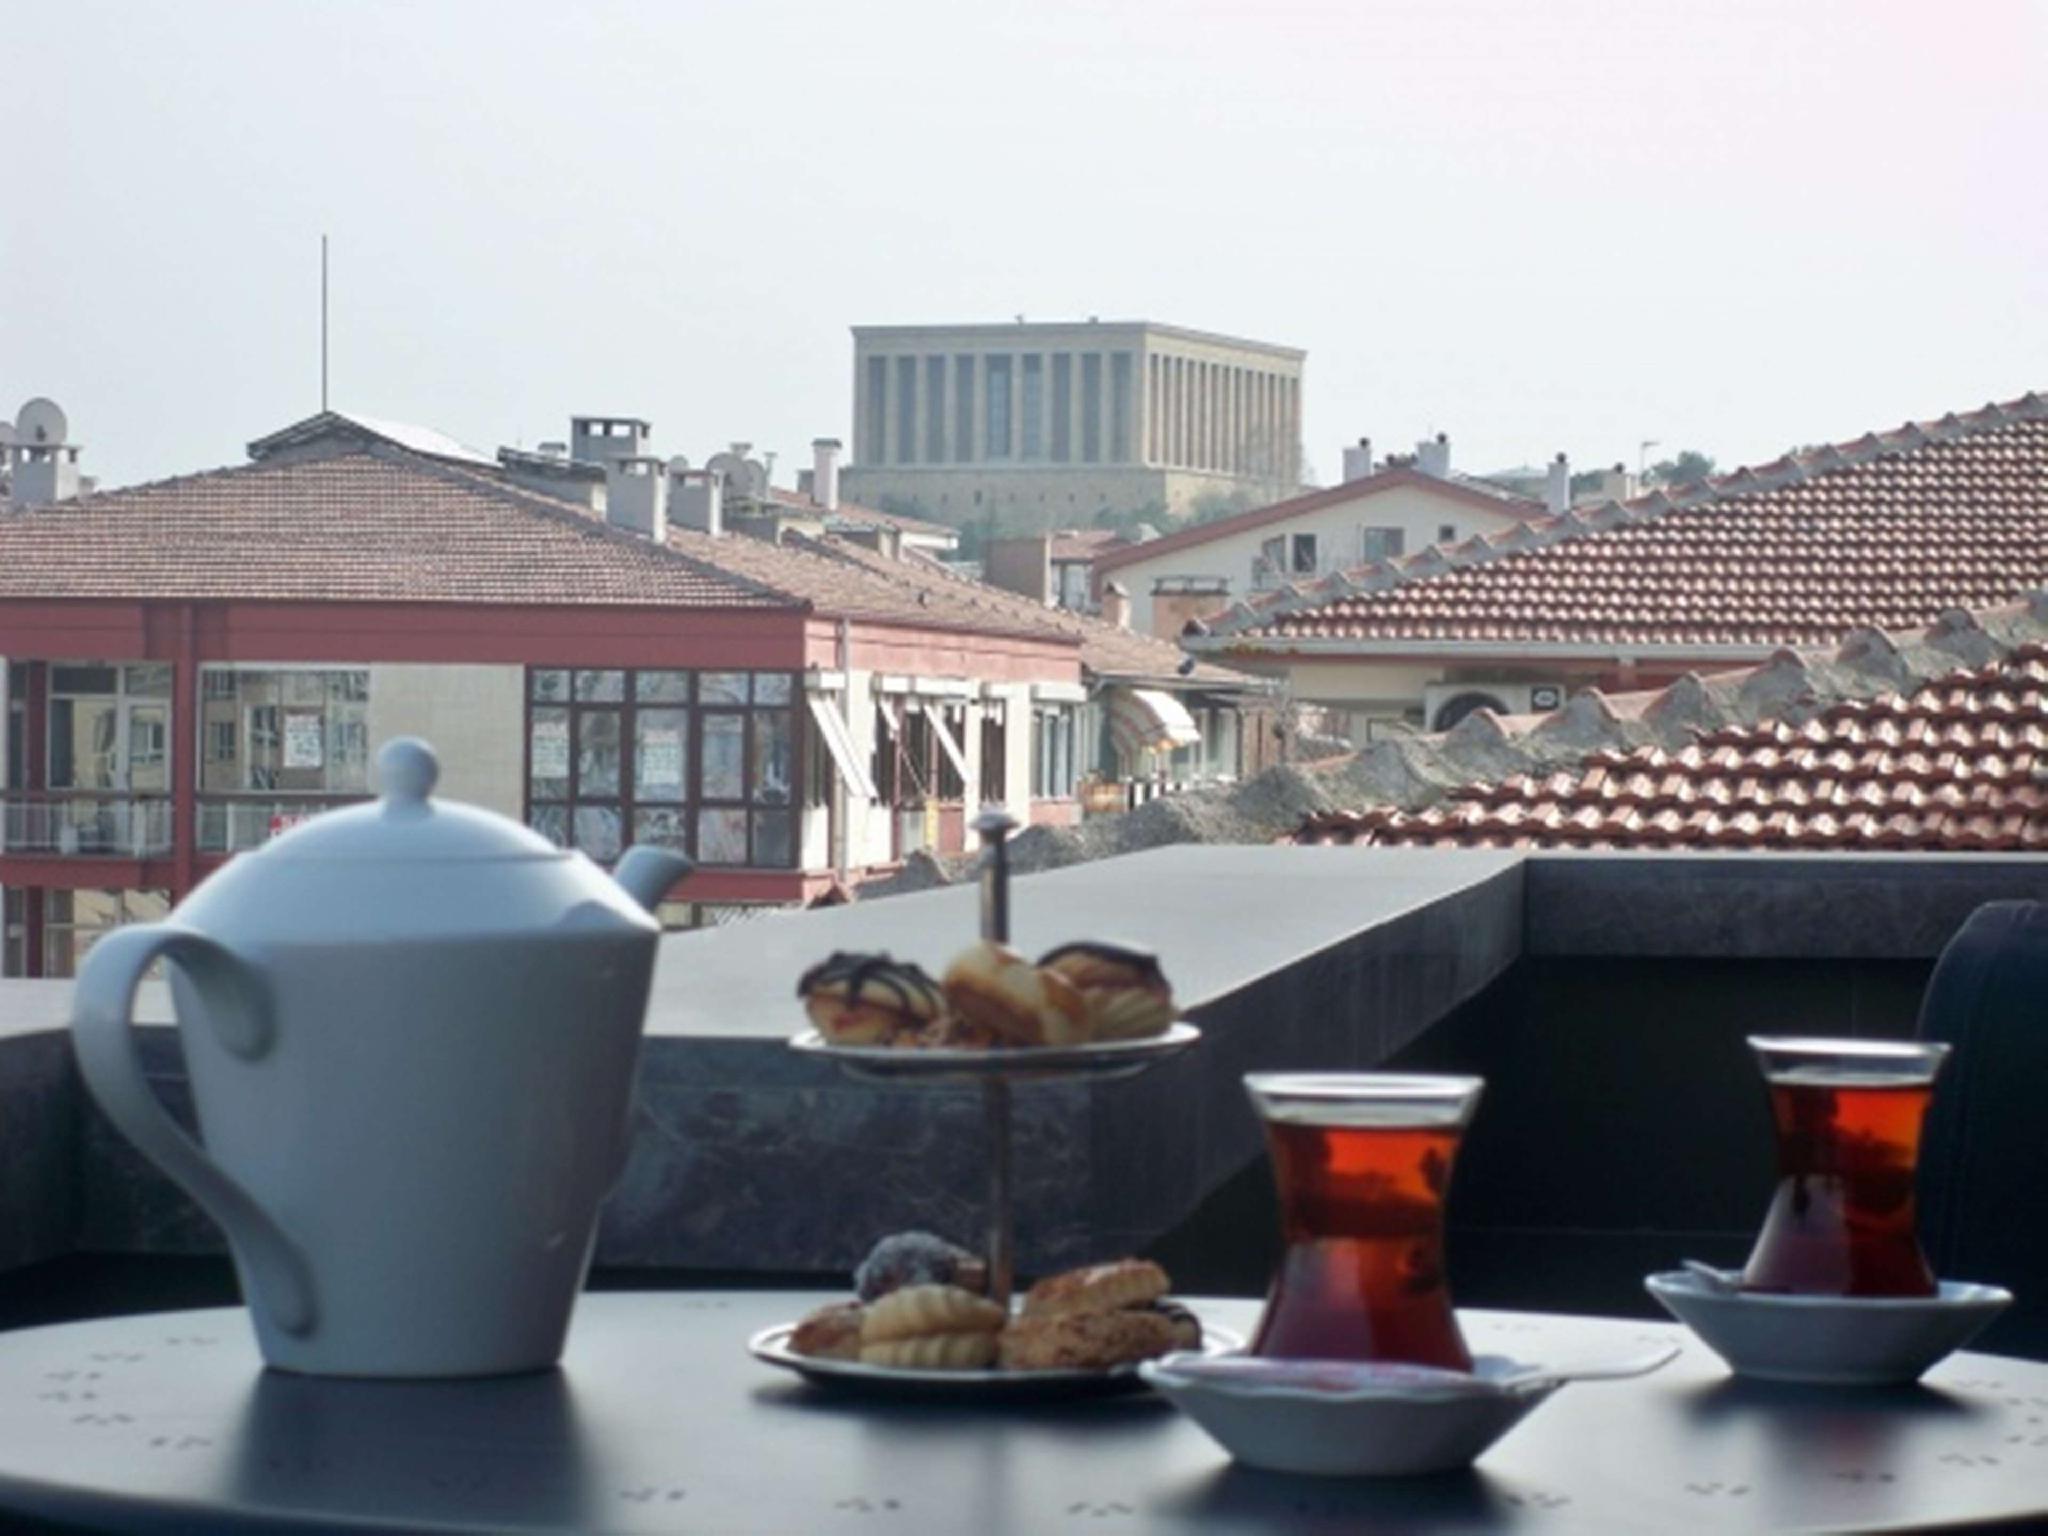 Maltepe 2000 Hotel Ankara Zewnętrze zdjęcie